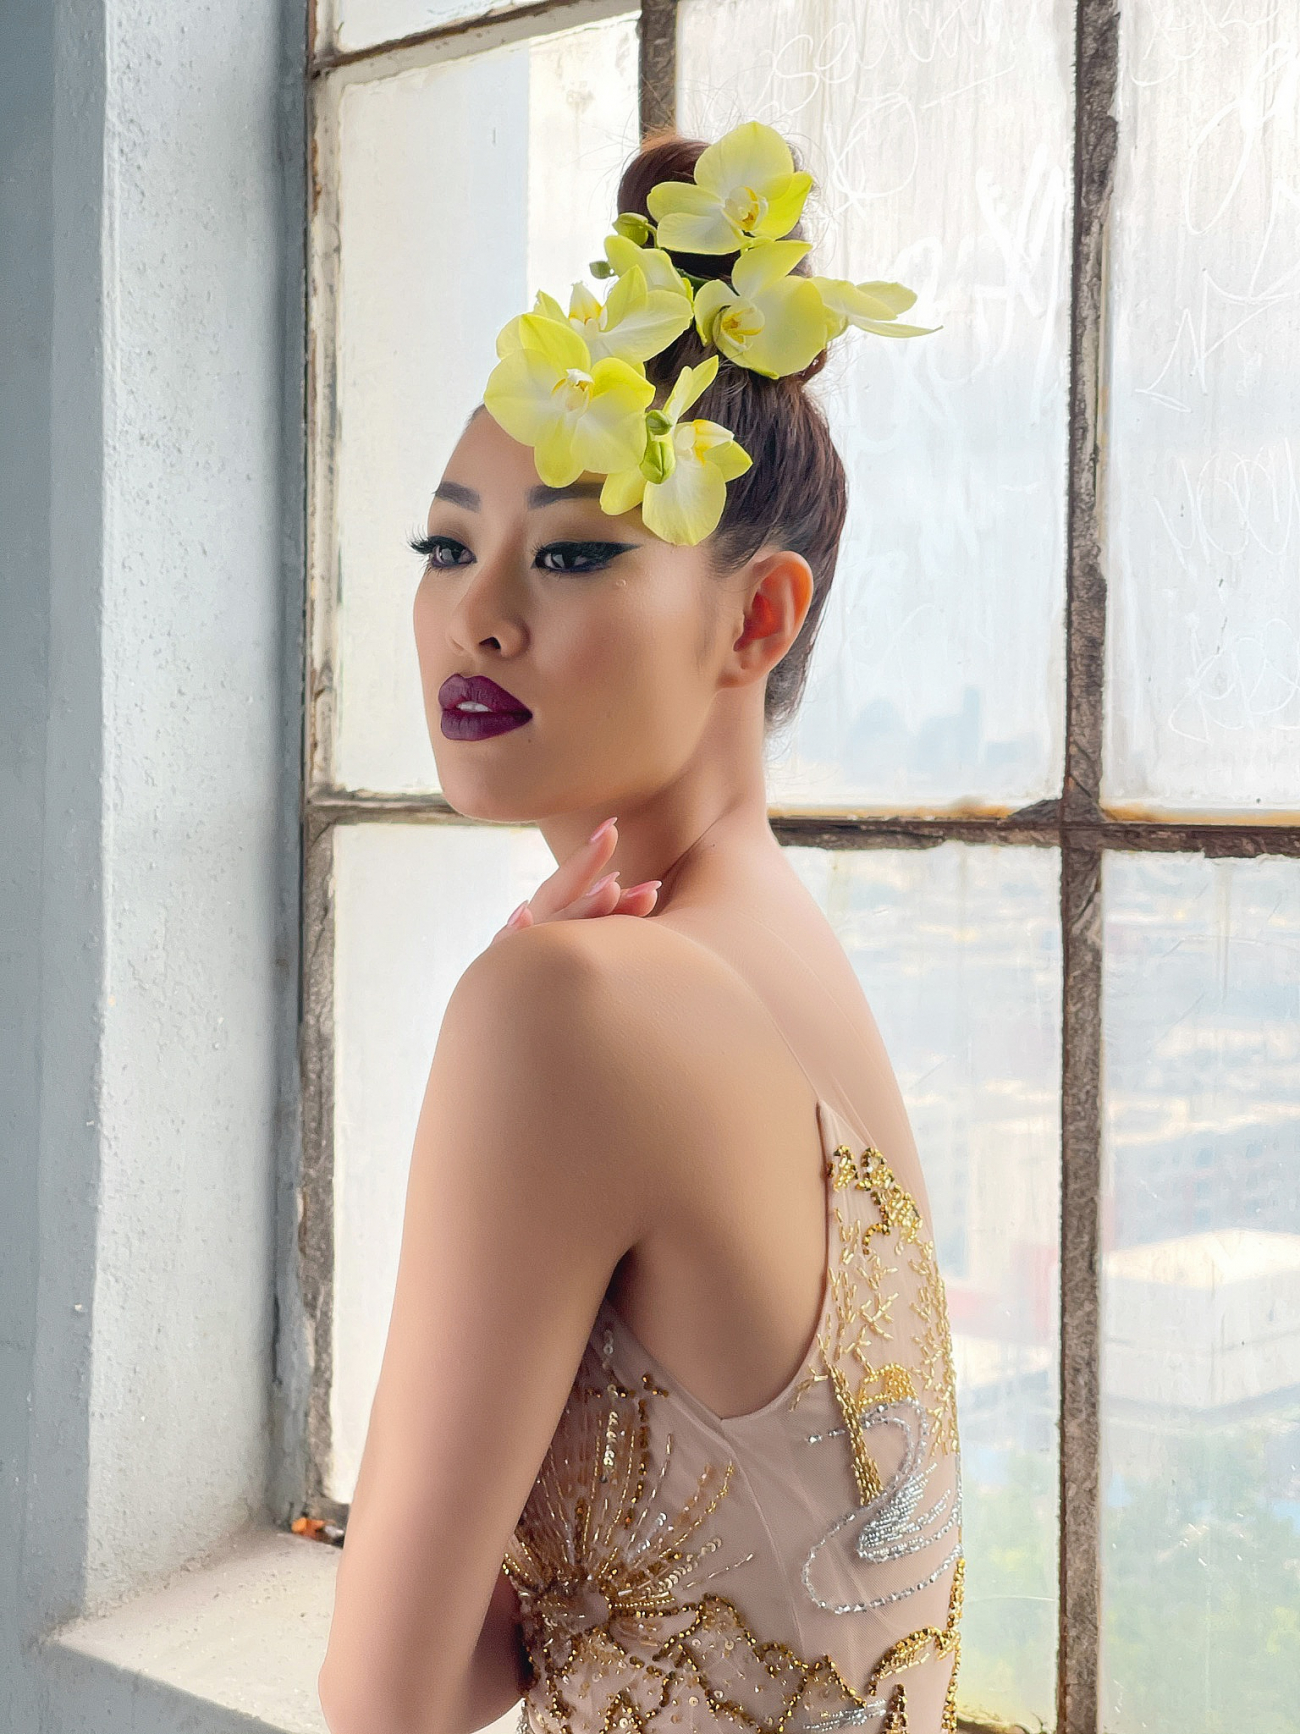 Hoa hậu khánh vân chụp ảnh cùng nhiếp ảnh gia nổi tiếng fadil berisha tại mỹ - 5